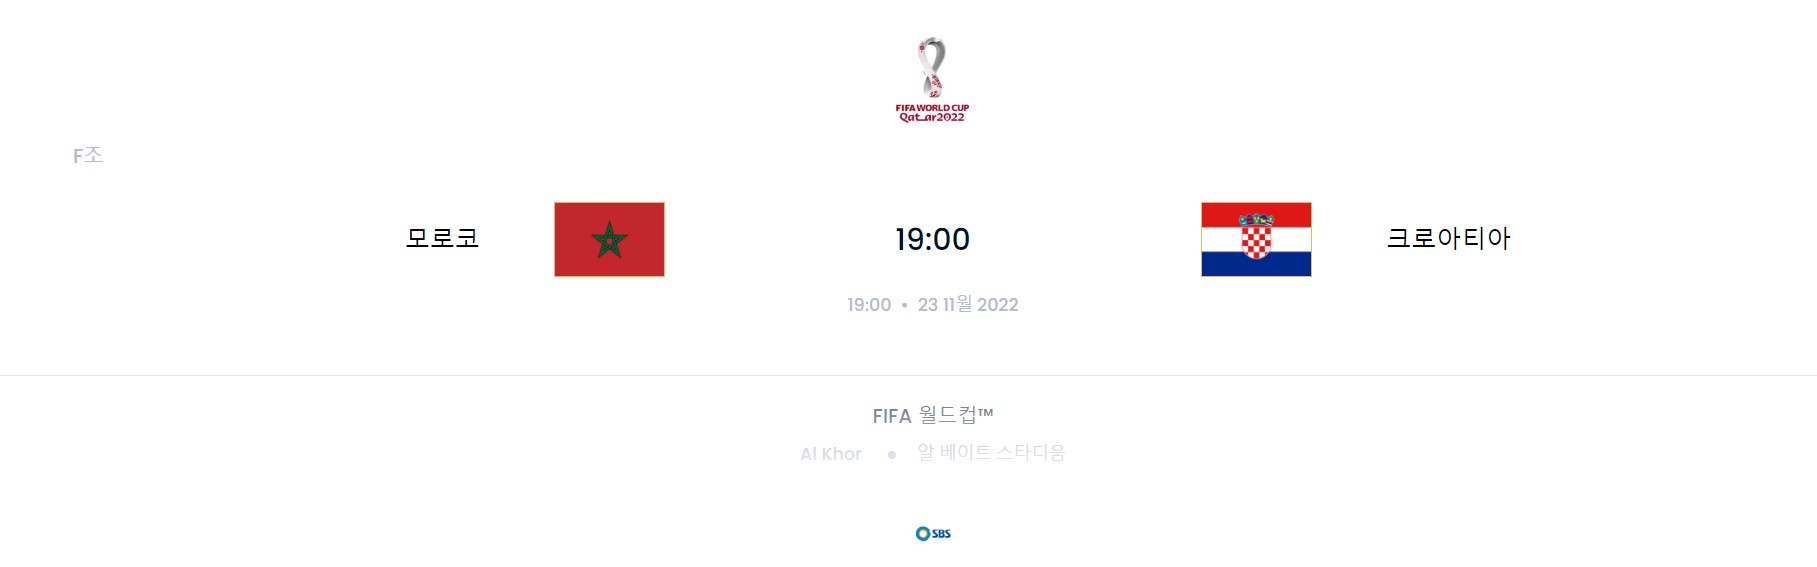 카타르 월드컵 F조 1경기 (모로코 VS 크로아티아)